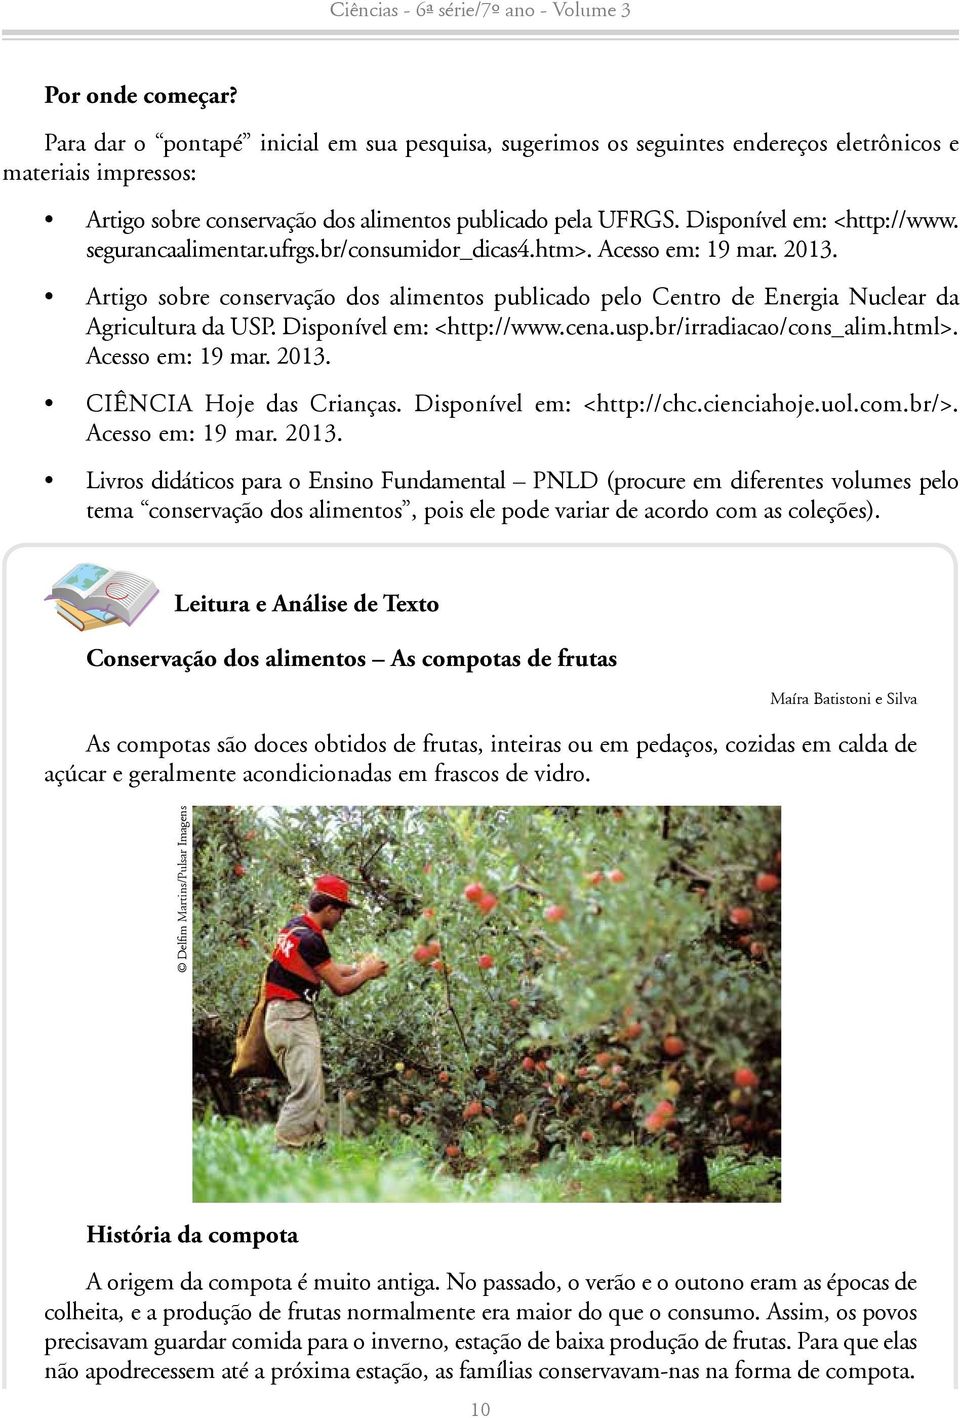 Artigo sobre conservação dos alimentos publicado pelo Centro de Energia Nuclear da Agricultura da USP. Disponível em: <http://www.cena.usp.br/irradiacao/cons_alim.html>. Acesso em: 19 mar. 2013.